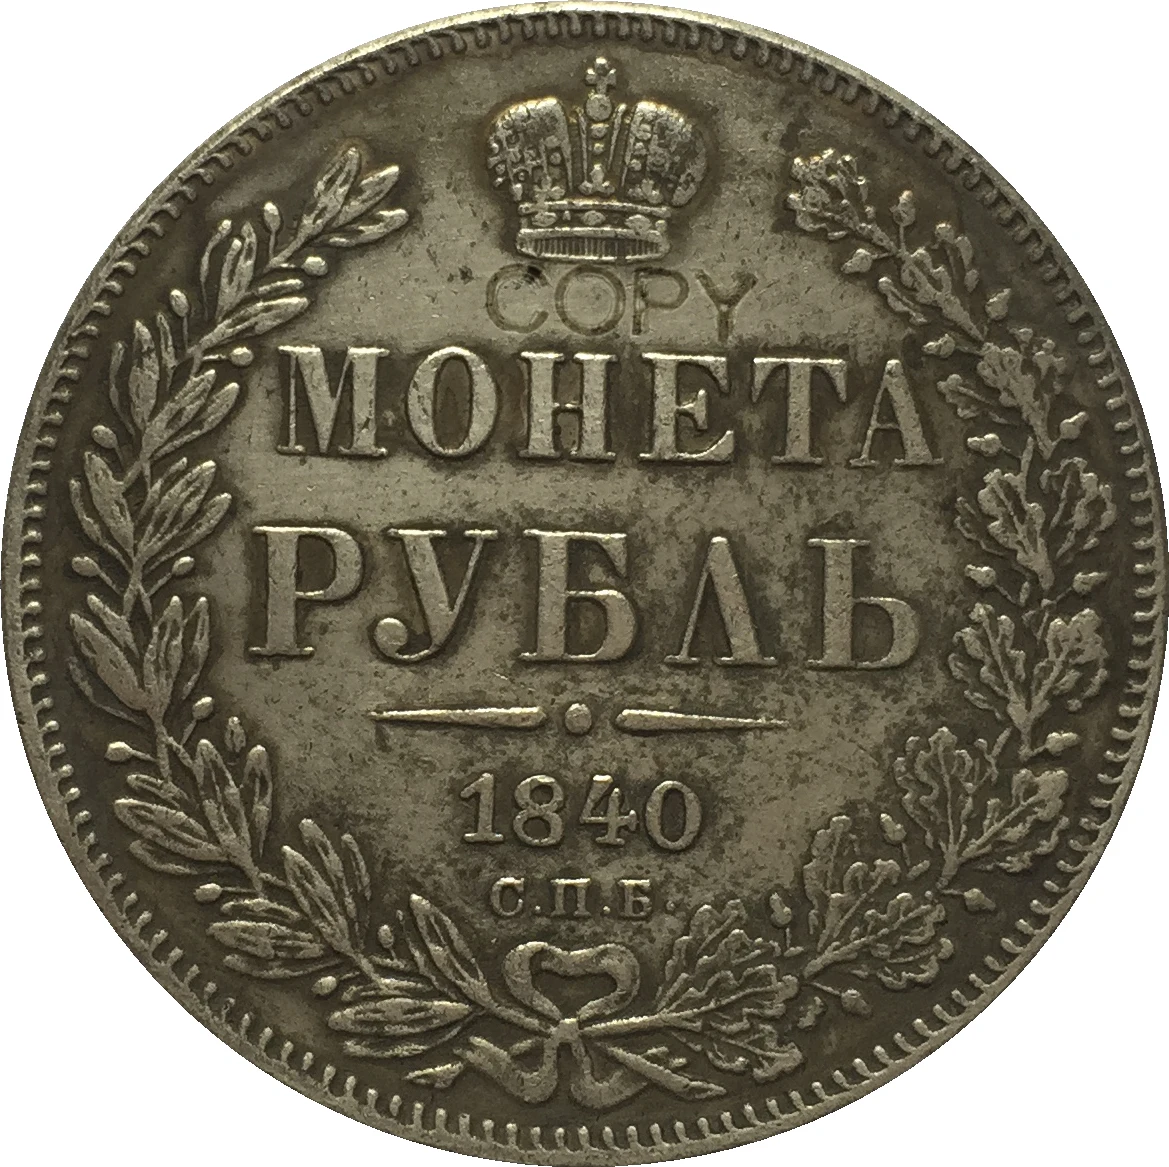 

Копия российских монет 1 рубль 1840